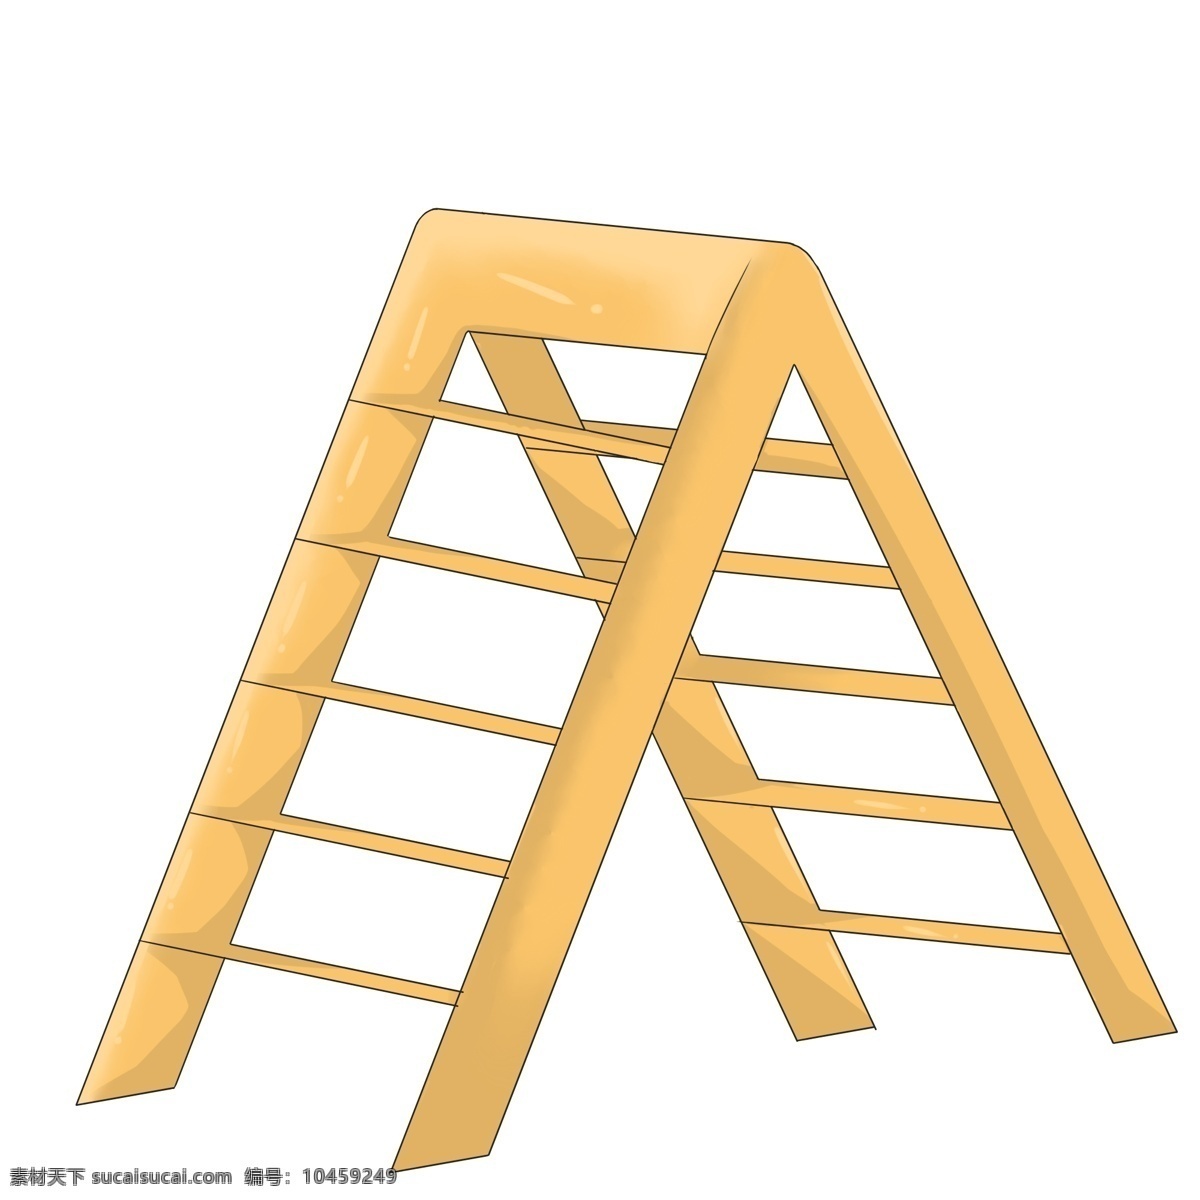 折叠梯 人字 梯 插画 梯子 折叠 工具设备 折叠梯子 家用梯子 多功能梯子 不锈钢梯子 人字梯 移动楼梯